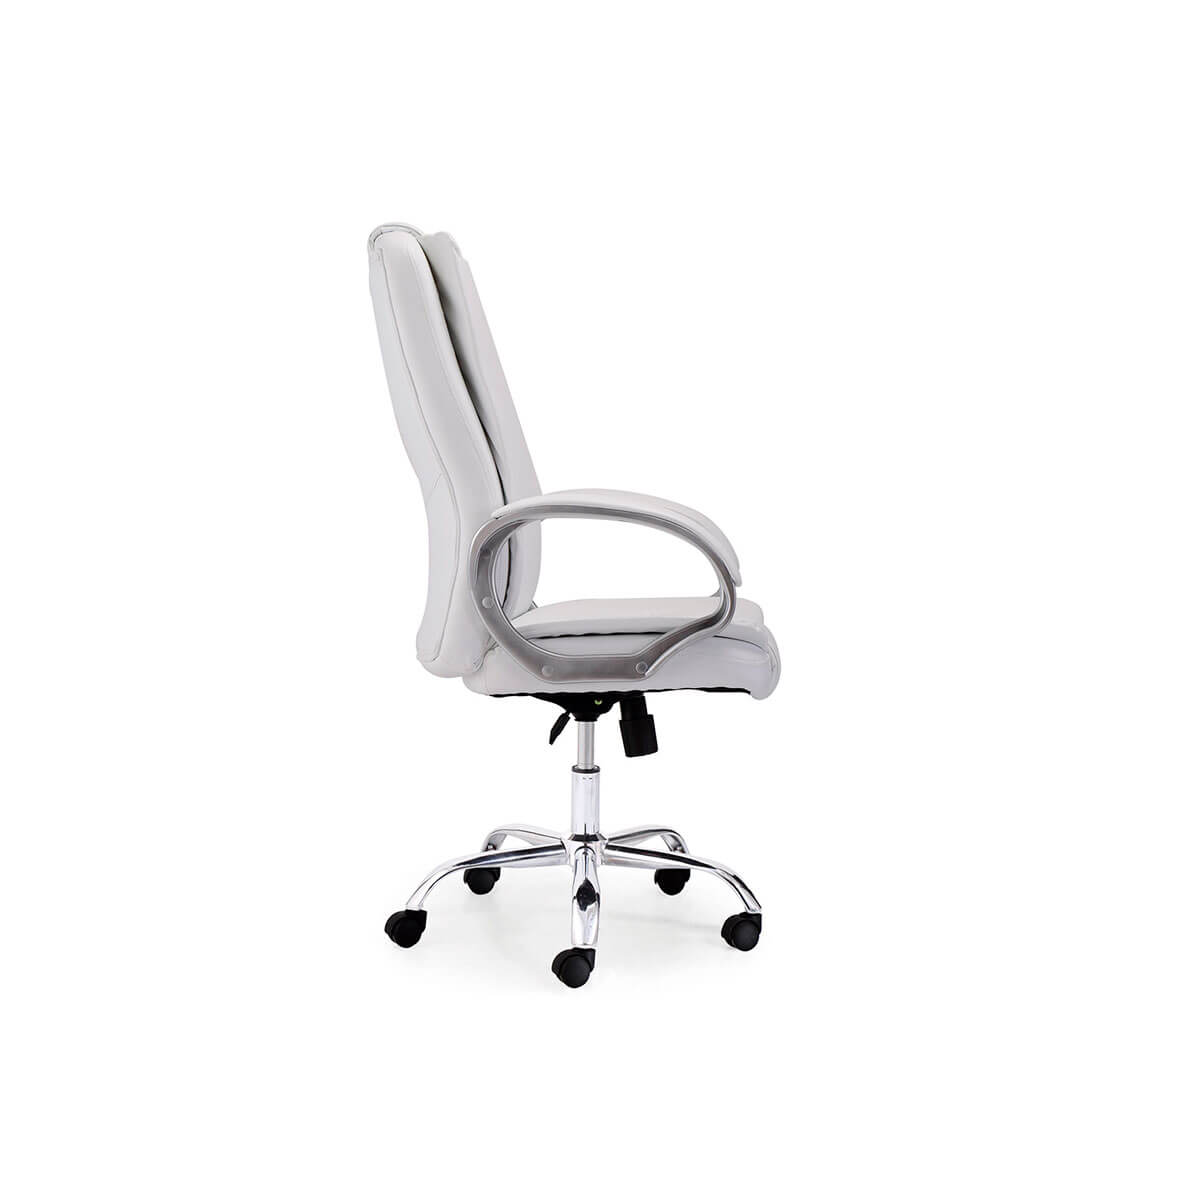 Silla escritorio acolchada blanca - ARTIKALIA - Muebles y decoracion